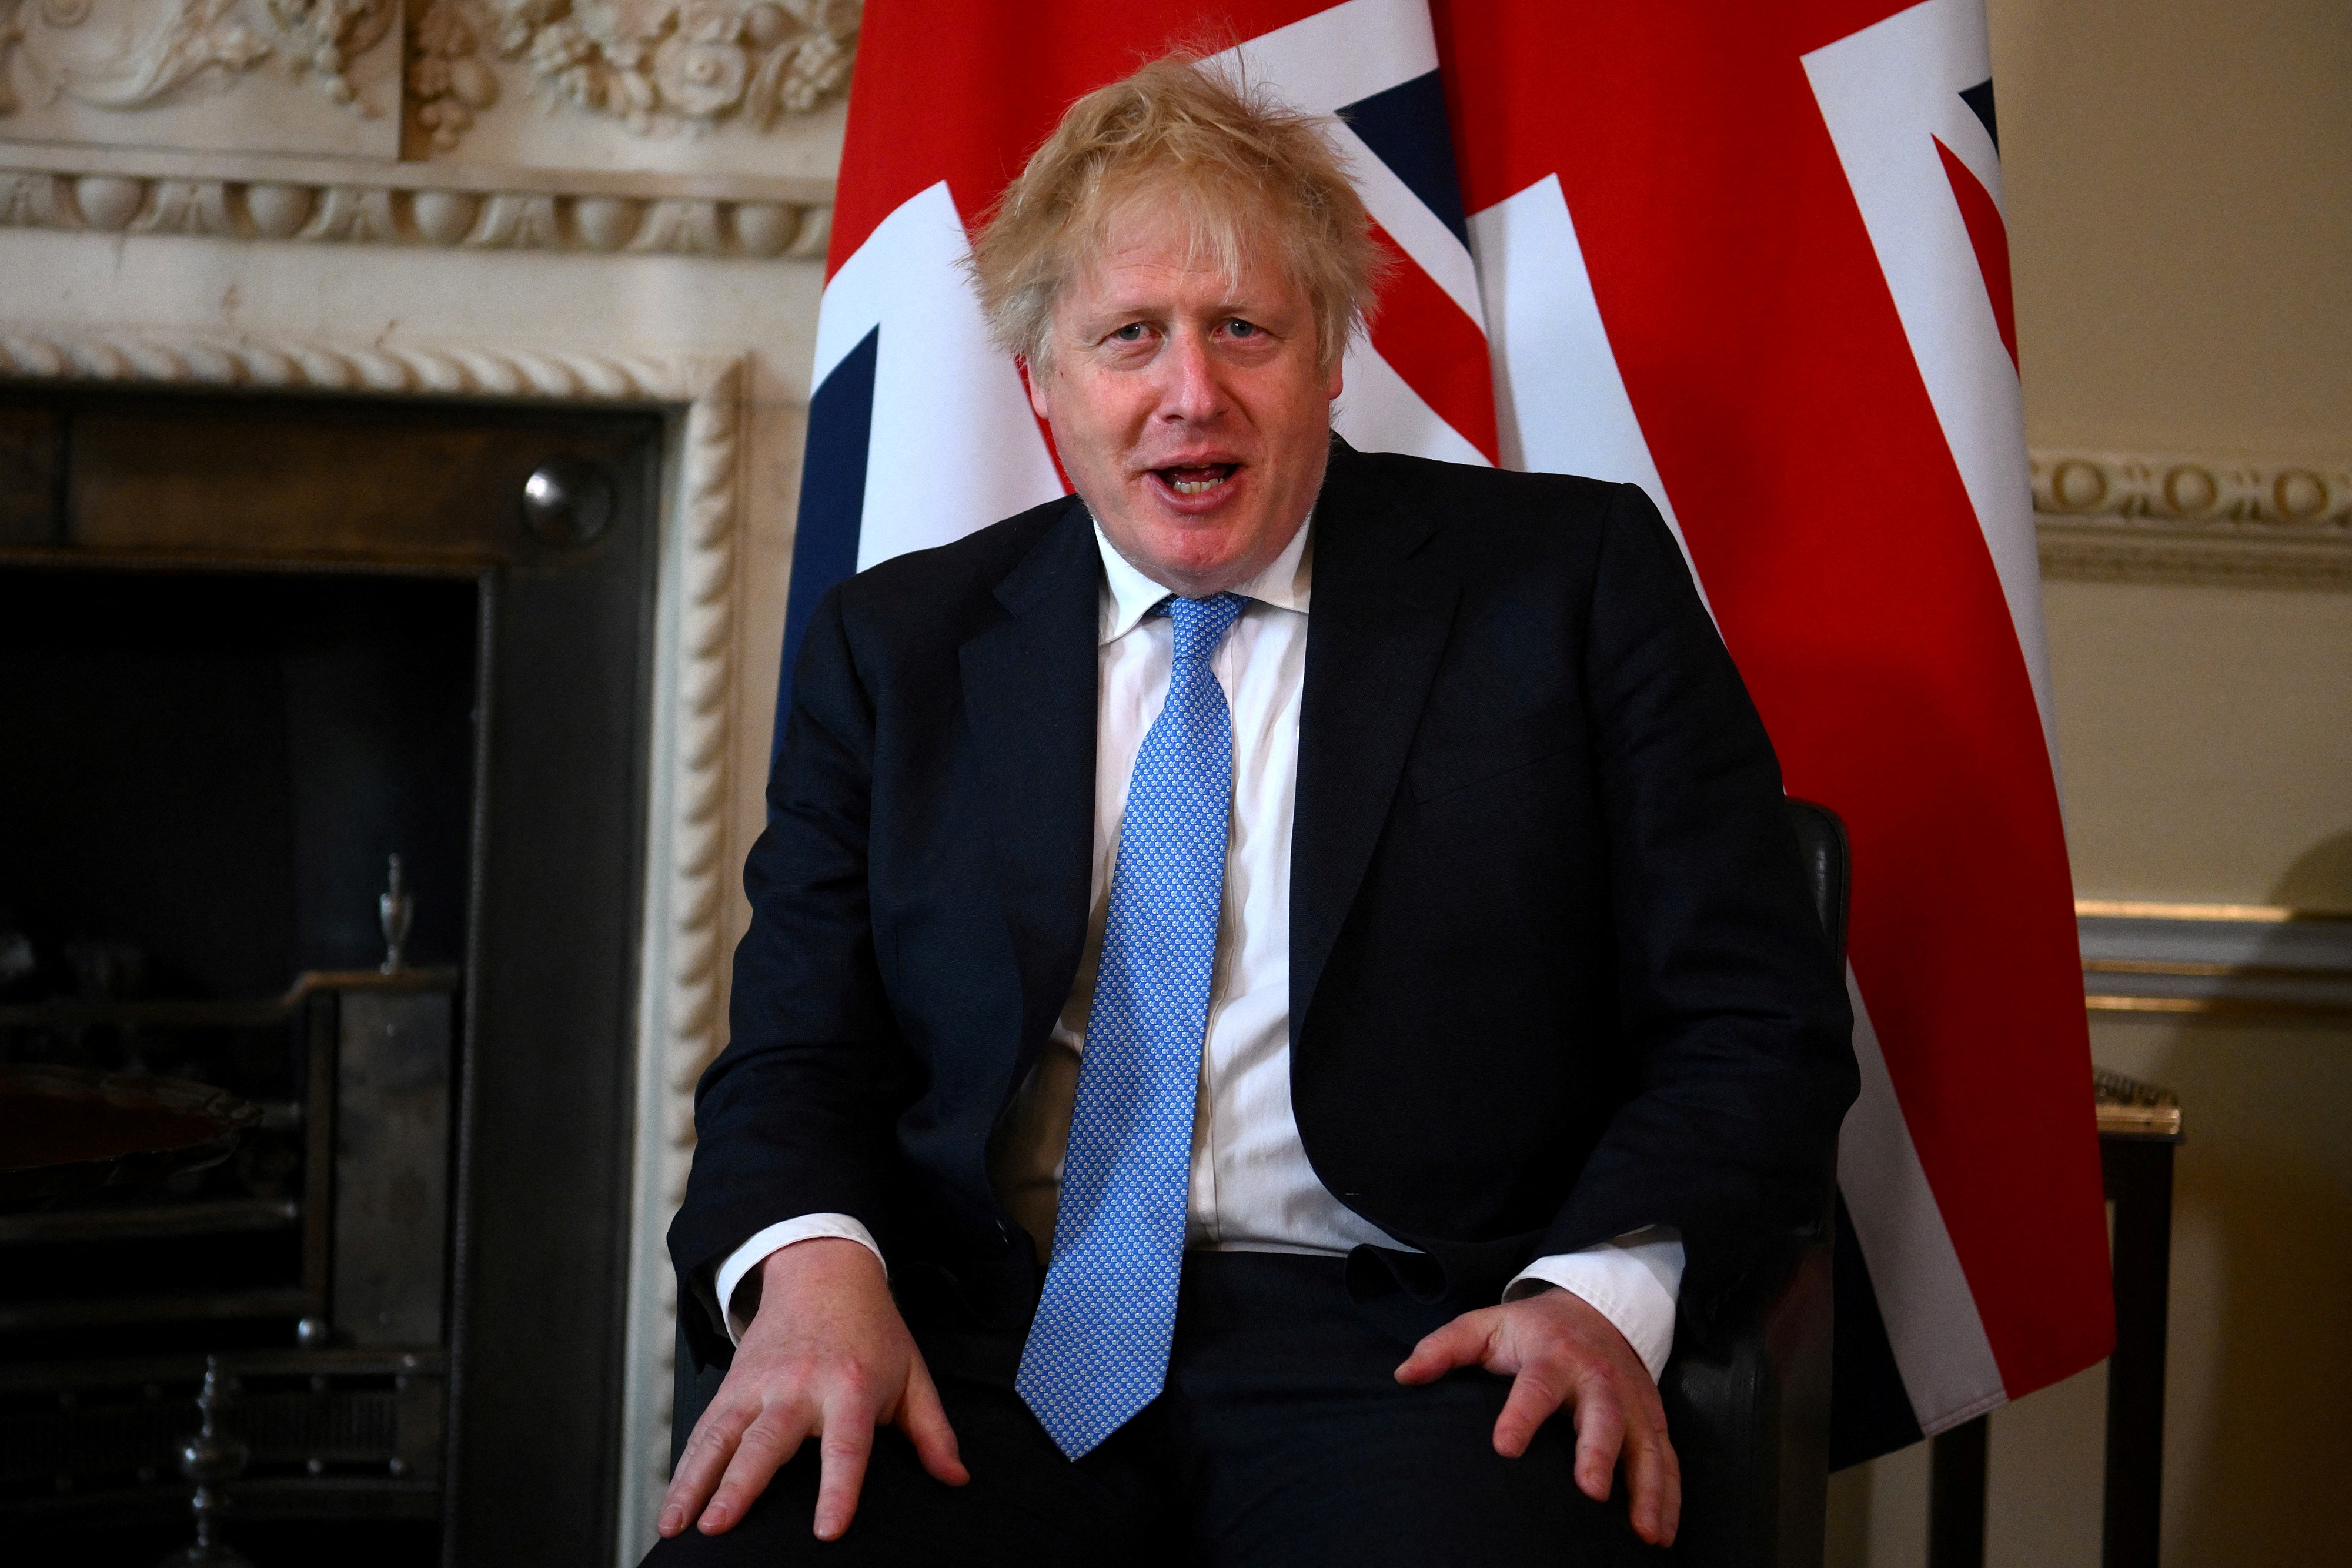 British PM Johnson meets his Kurdish counterpart Barzani at Downing Street in London